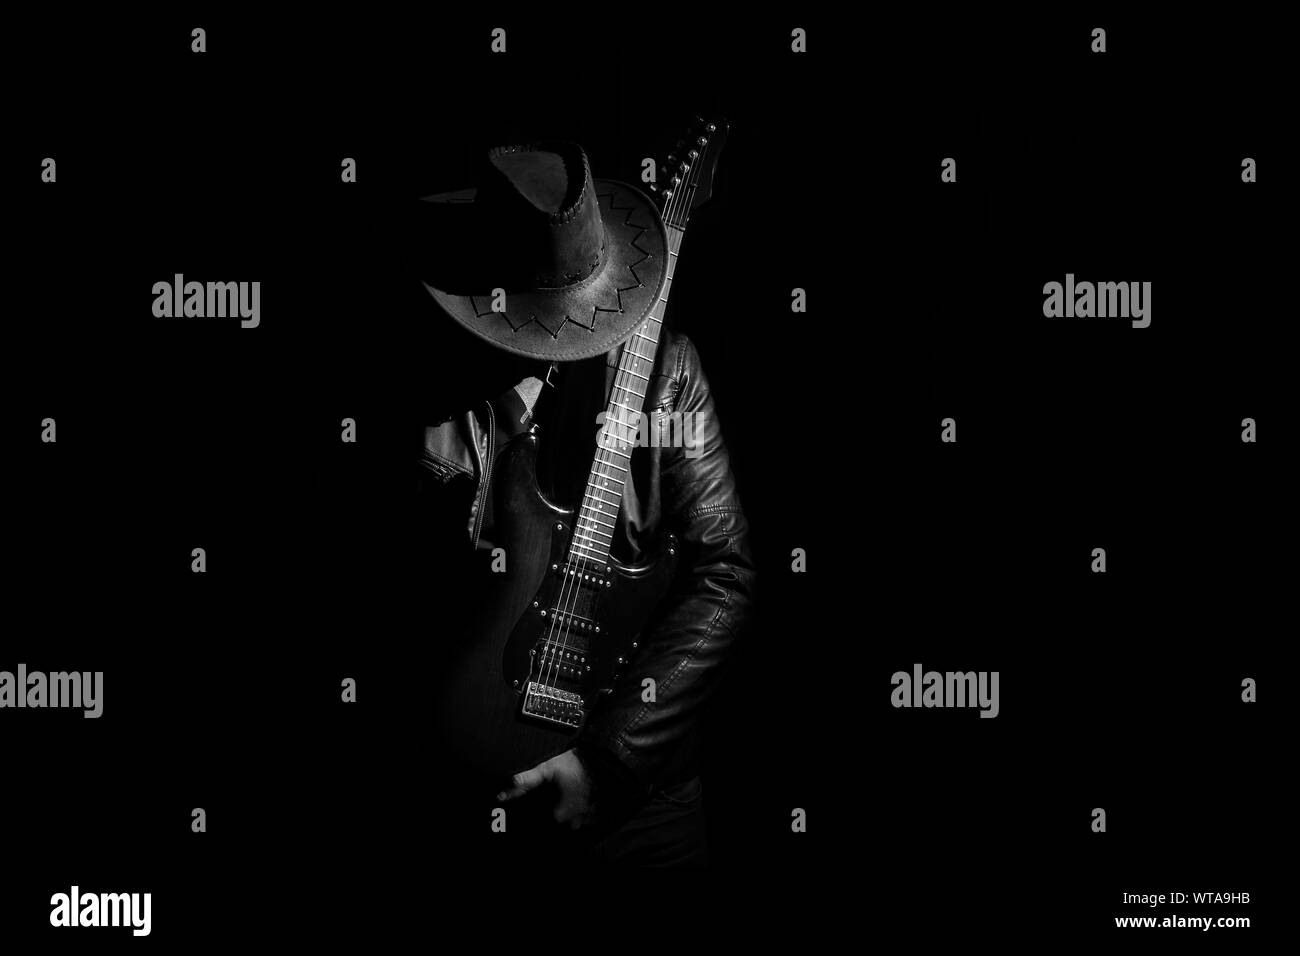 Silhouette von Guitar Player (Gitarrist). Musik Konzept, Gitarrist im Dunkeln. Schwarz und whiite Foto. Stockfoto